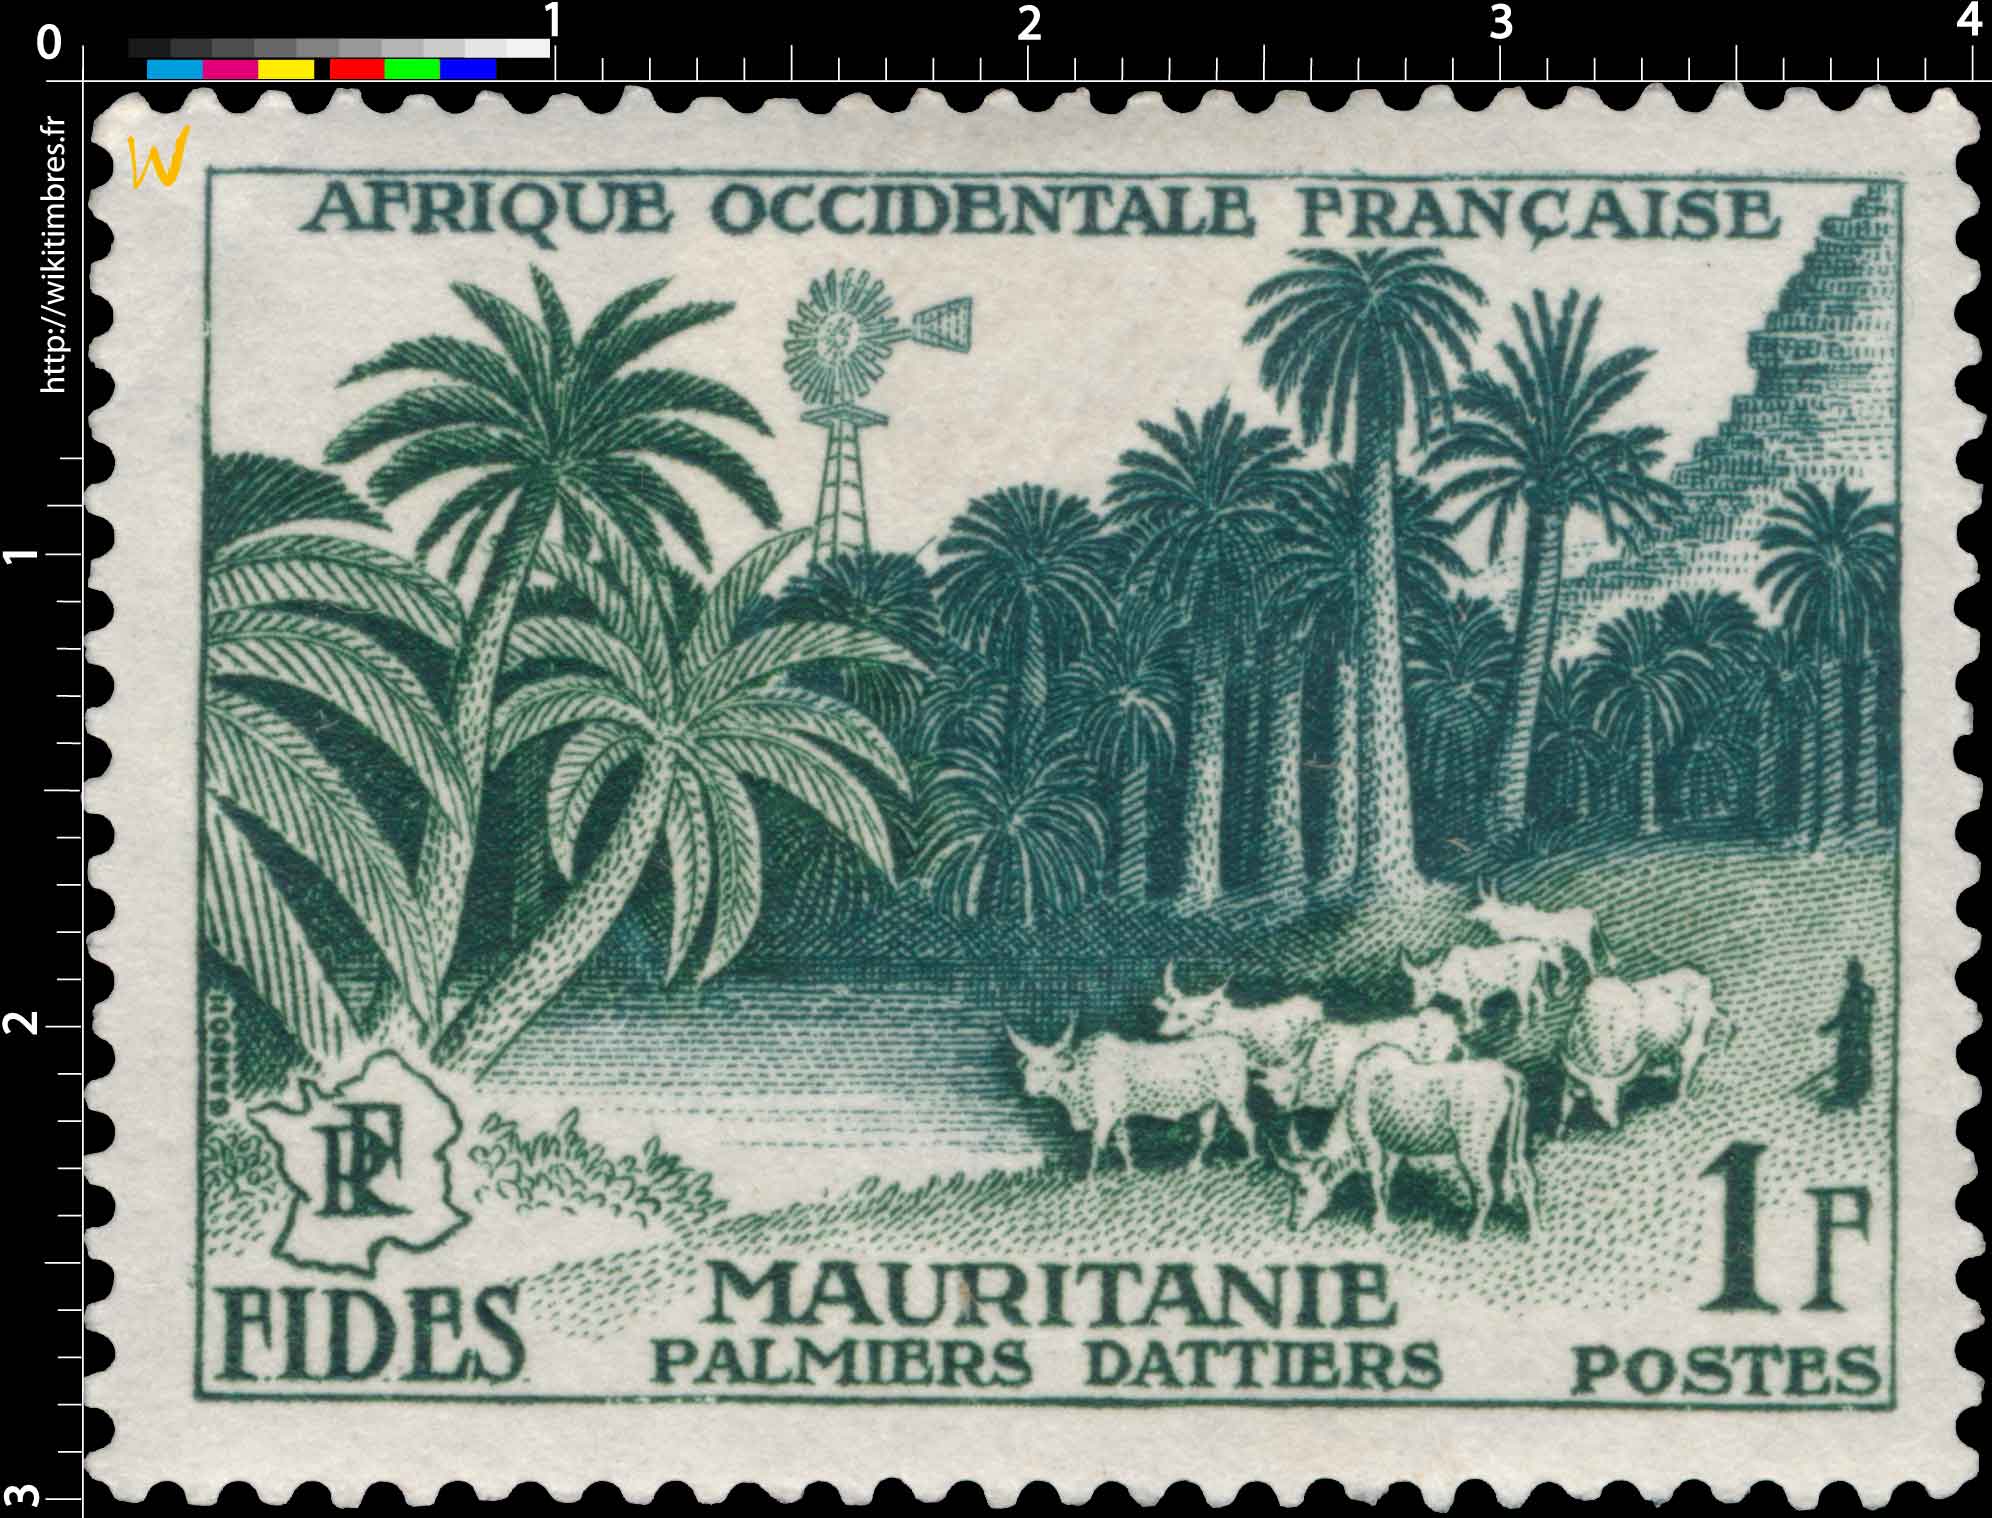 Afrique Occidentale Française - F.I.D.E.S. - Palmiers-dattiers - Mauritanie